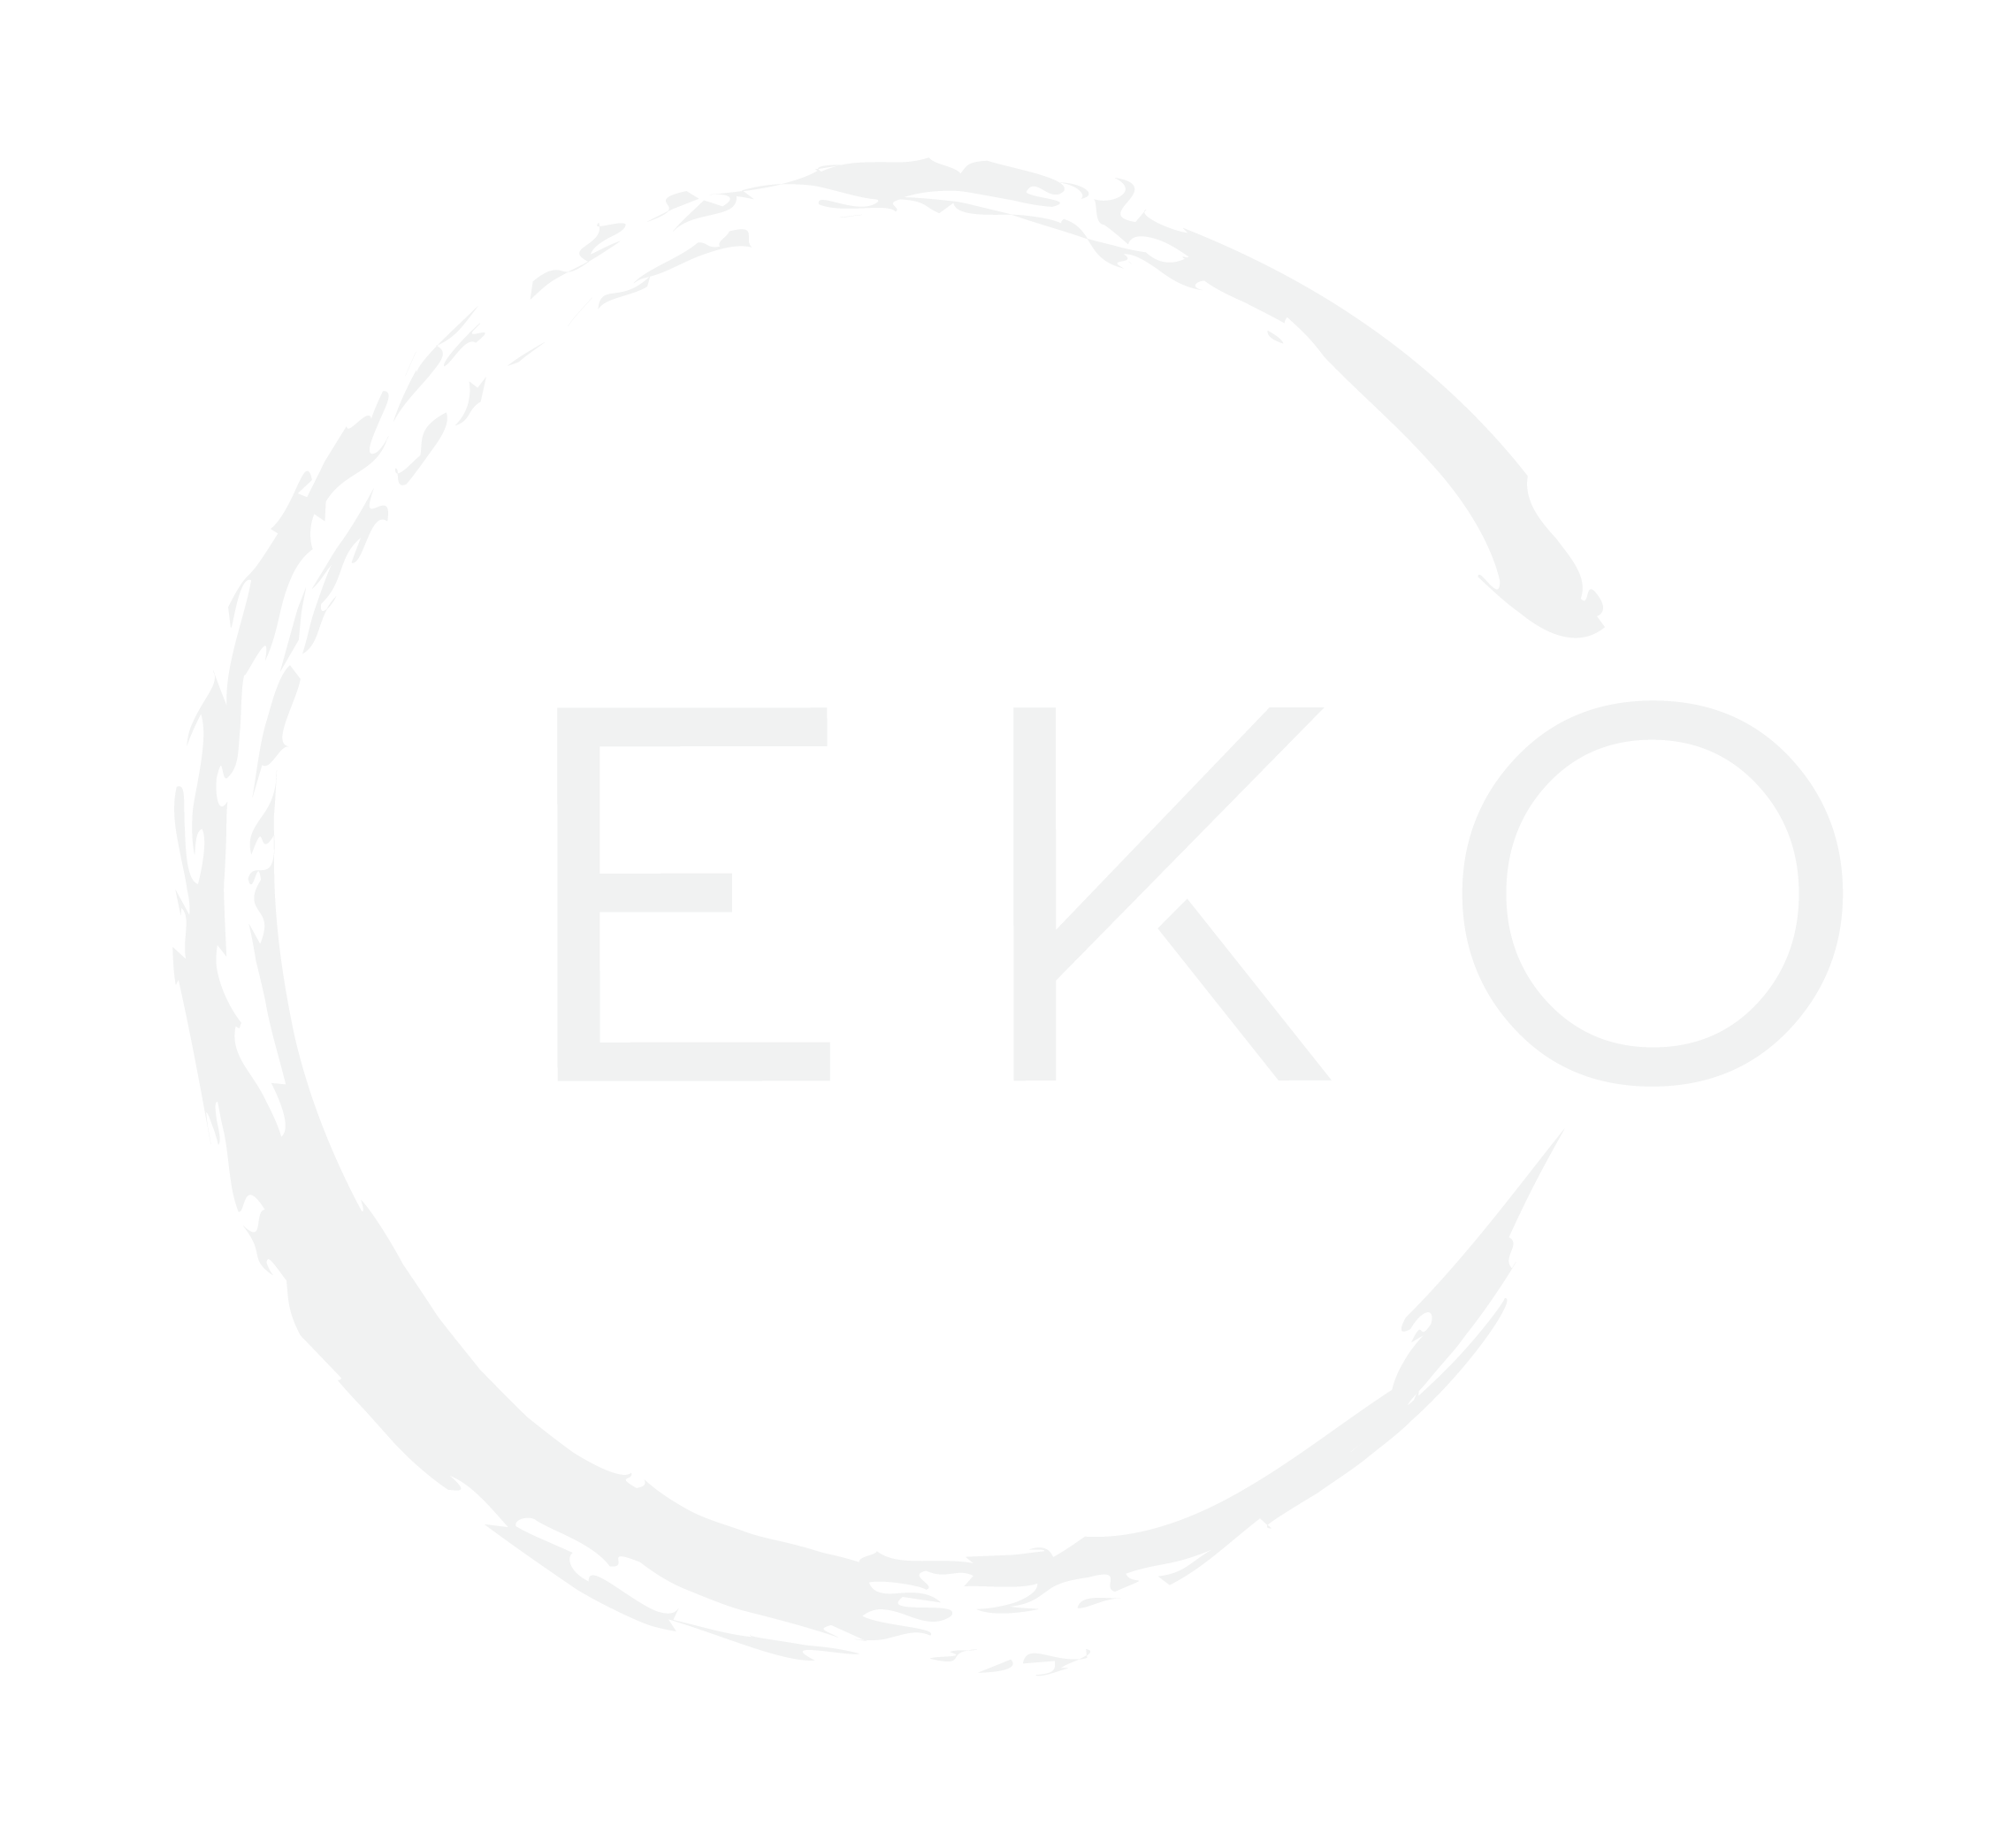 eko circle logo white